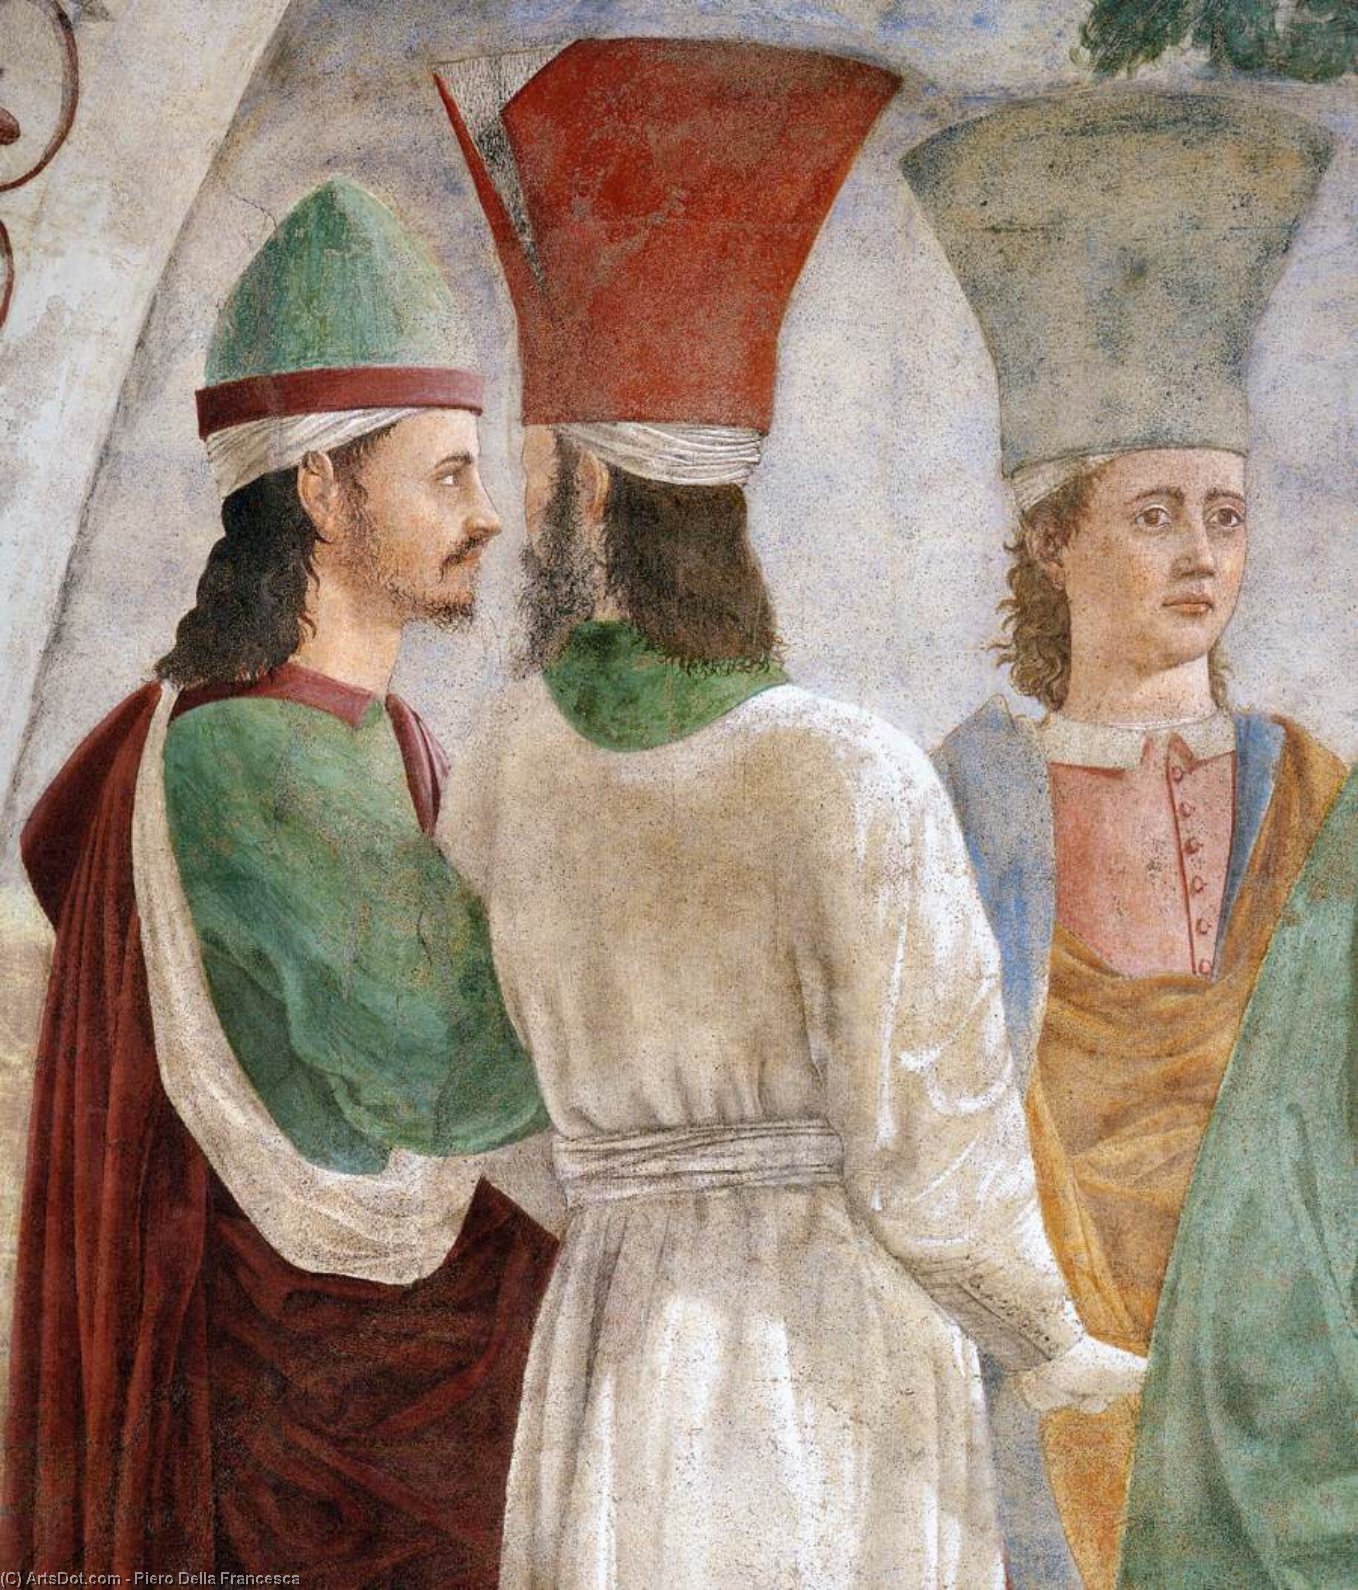 Wikioo.org - Bách khoa toàn thư về mỹ thuật - Vẽ tranh, Tác phẩm nghệ thuật Piero Della Francesca - 9. Exaltation of the Cross (detail)